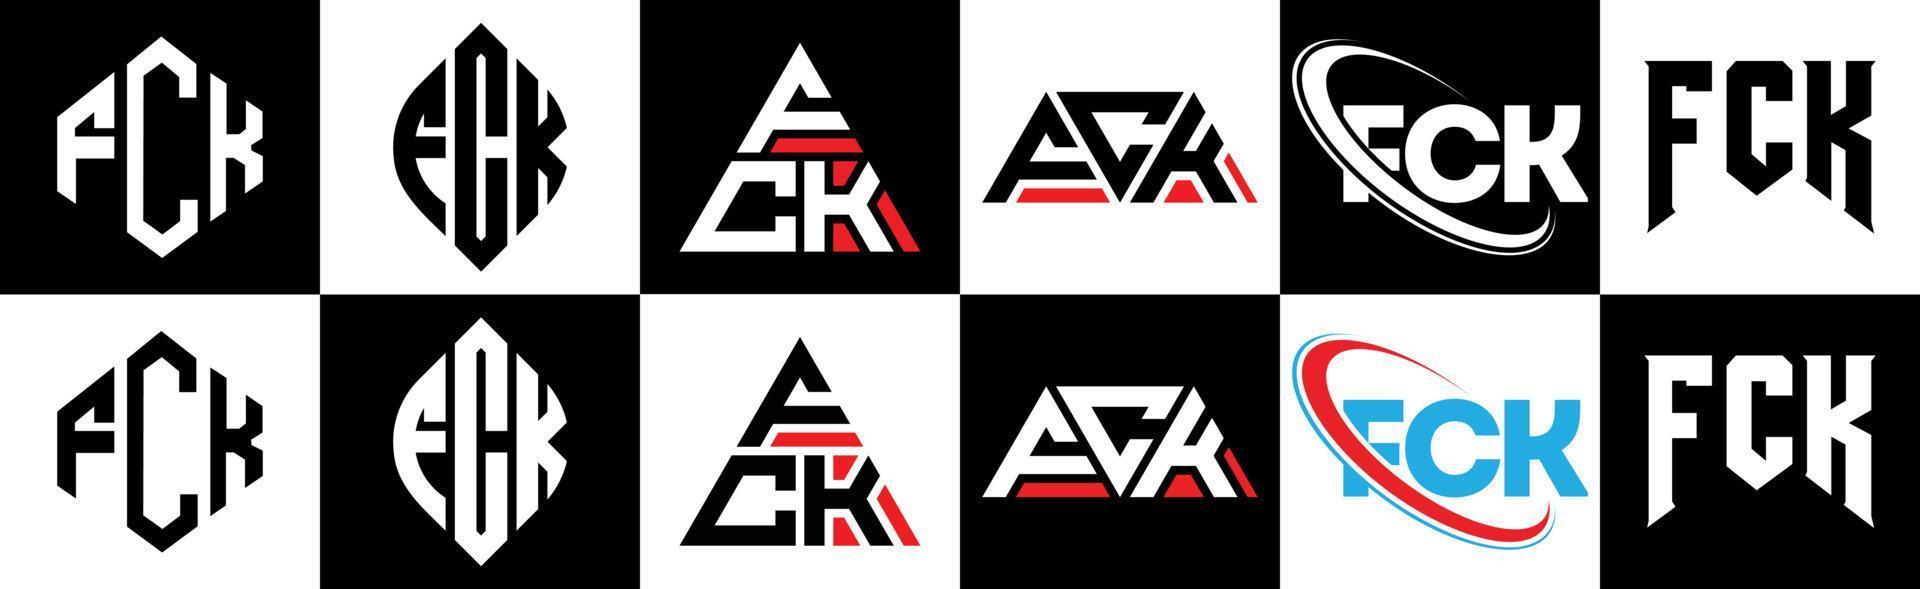 fck-Buchstaben-Logo-Design in sechs Stilen. fck polygon, kreis, dreieck, hexagon, flacher und einfacher stil mit schwarz-weißem buchstabenlogo in einer zeichenfläche. fck minimalistisches und klassisches Logo vektor